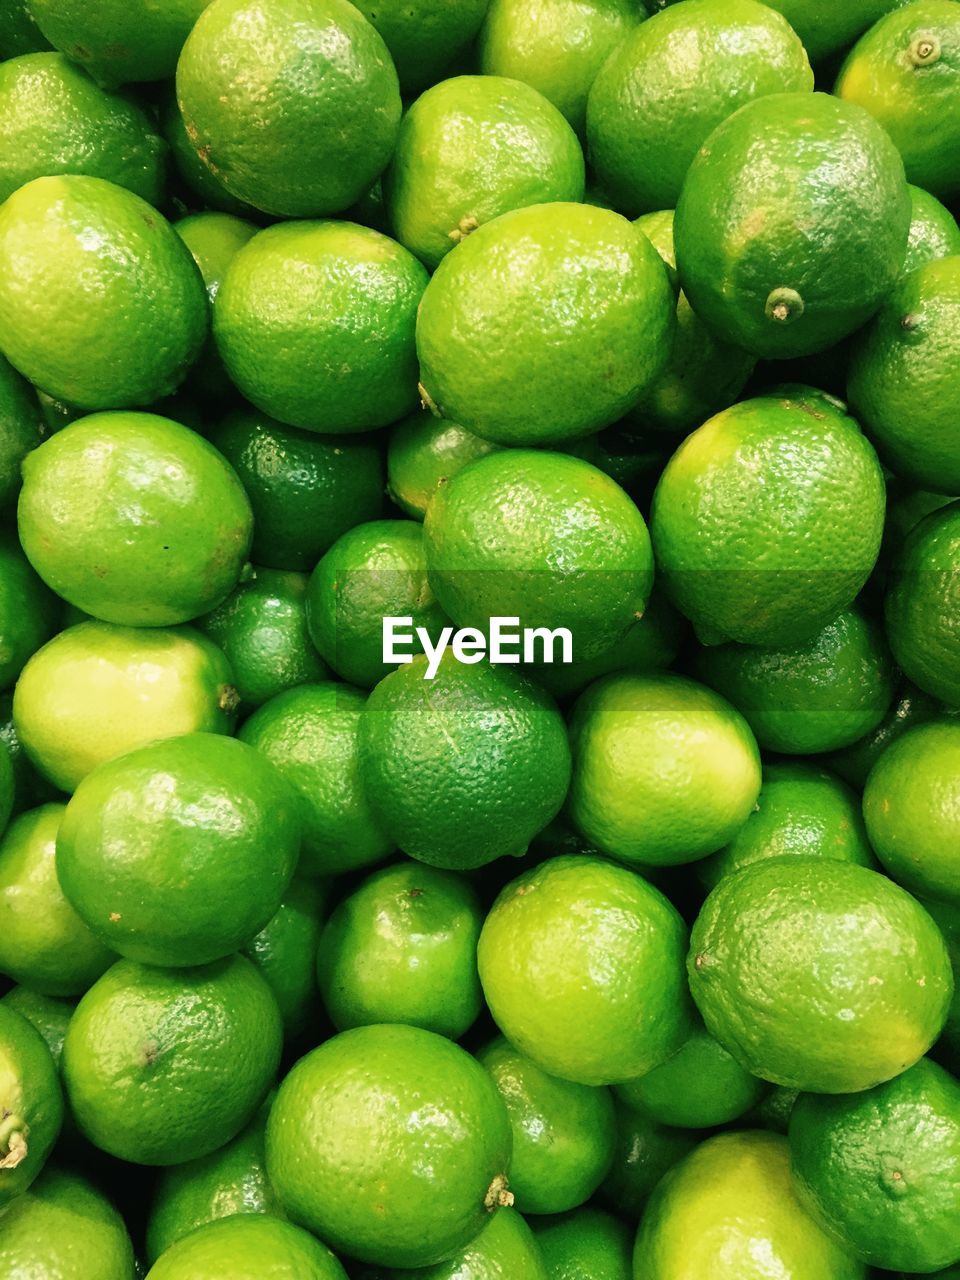 Full frame shot of green lemons.